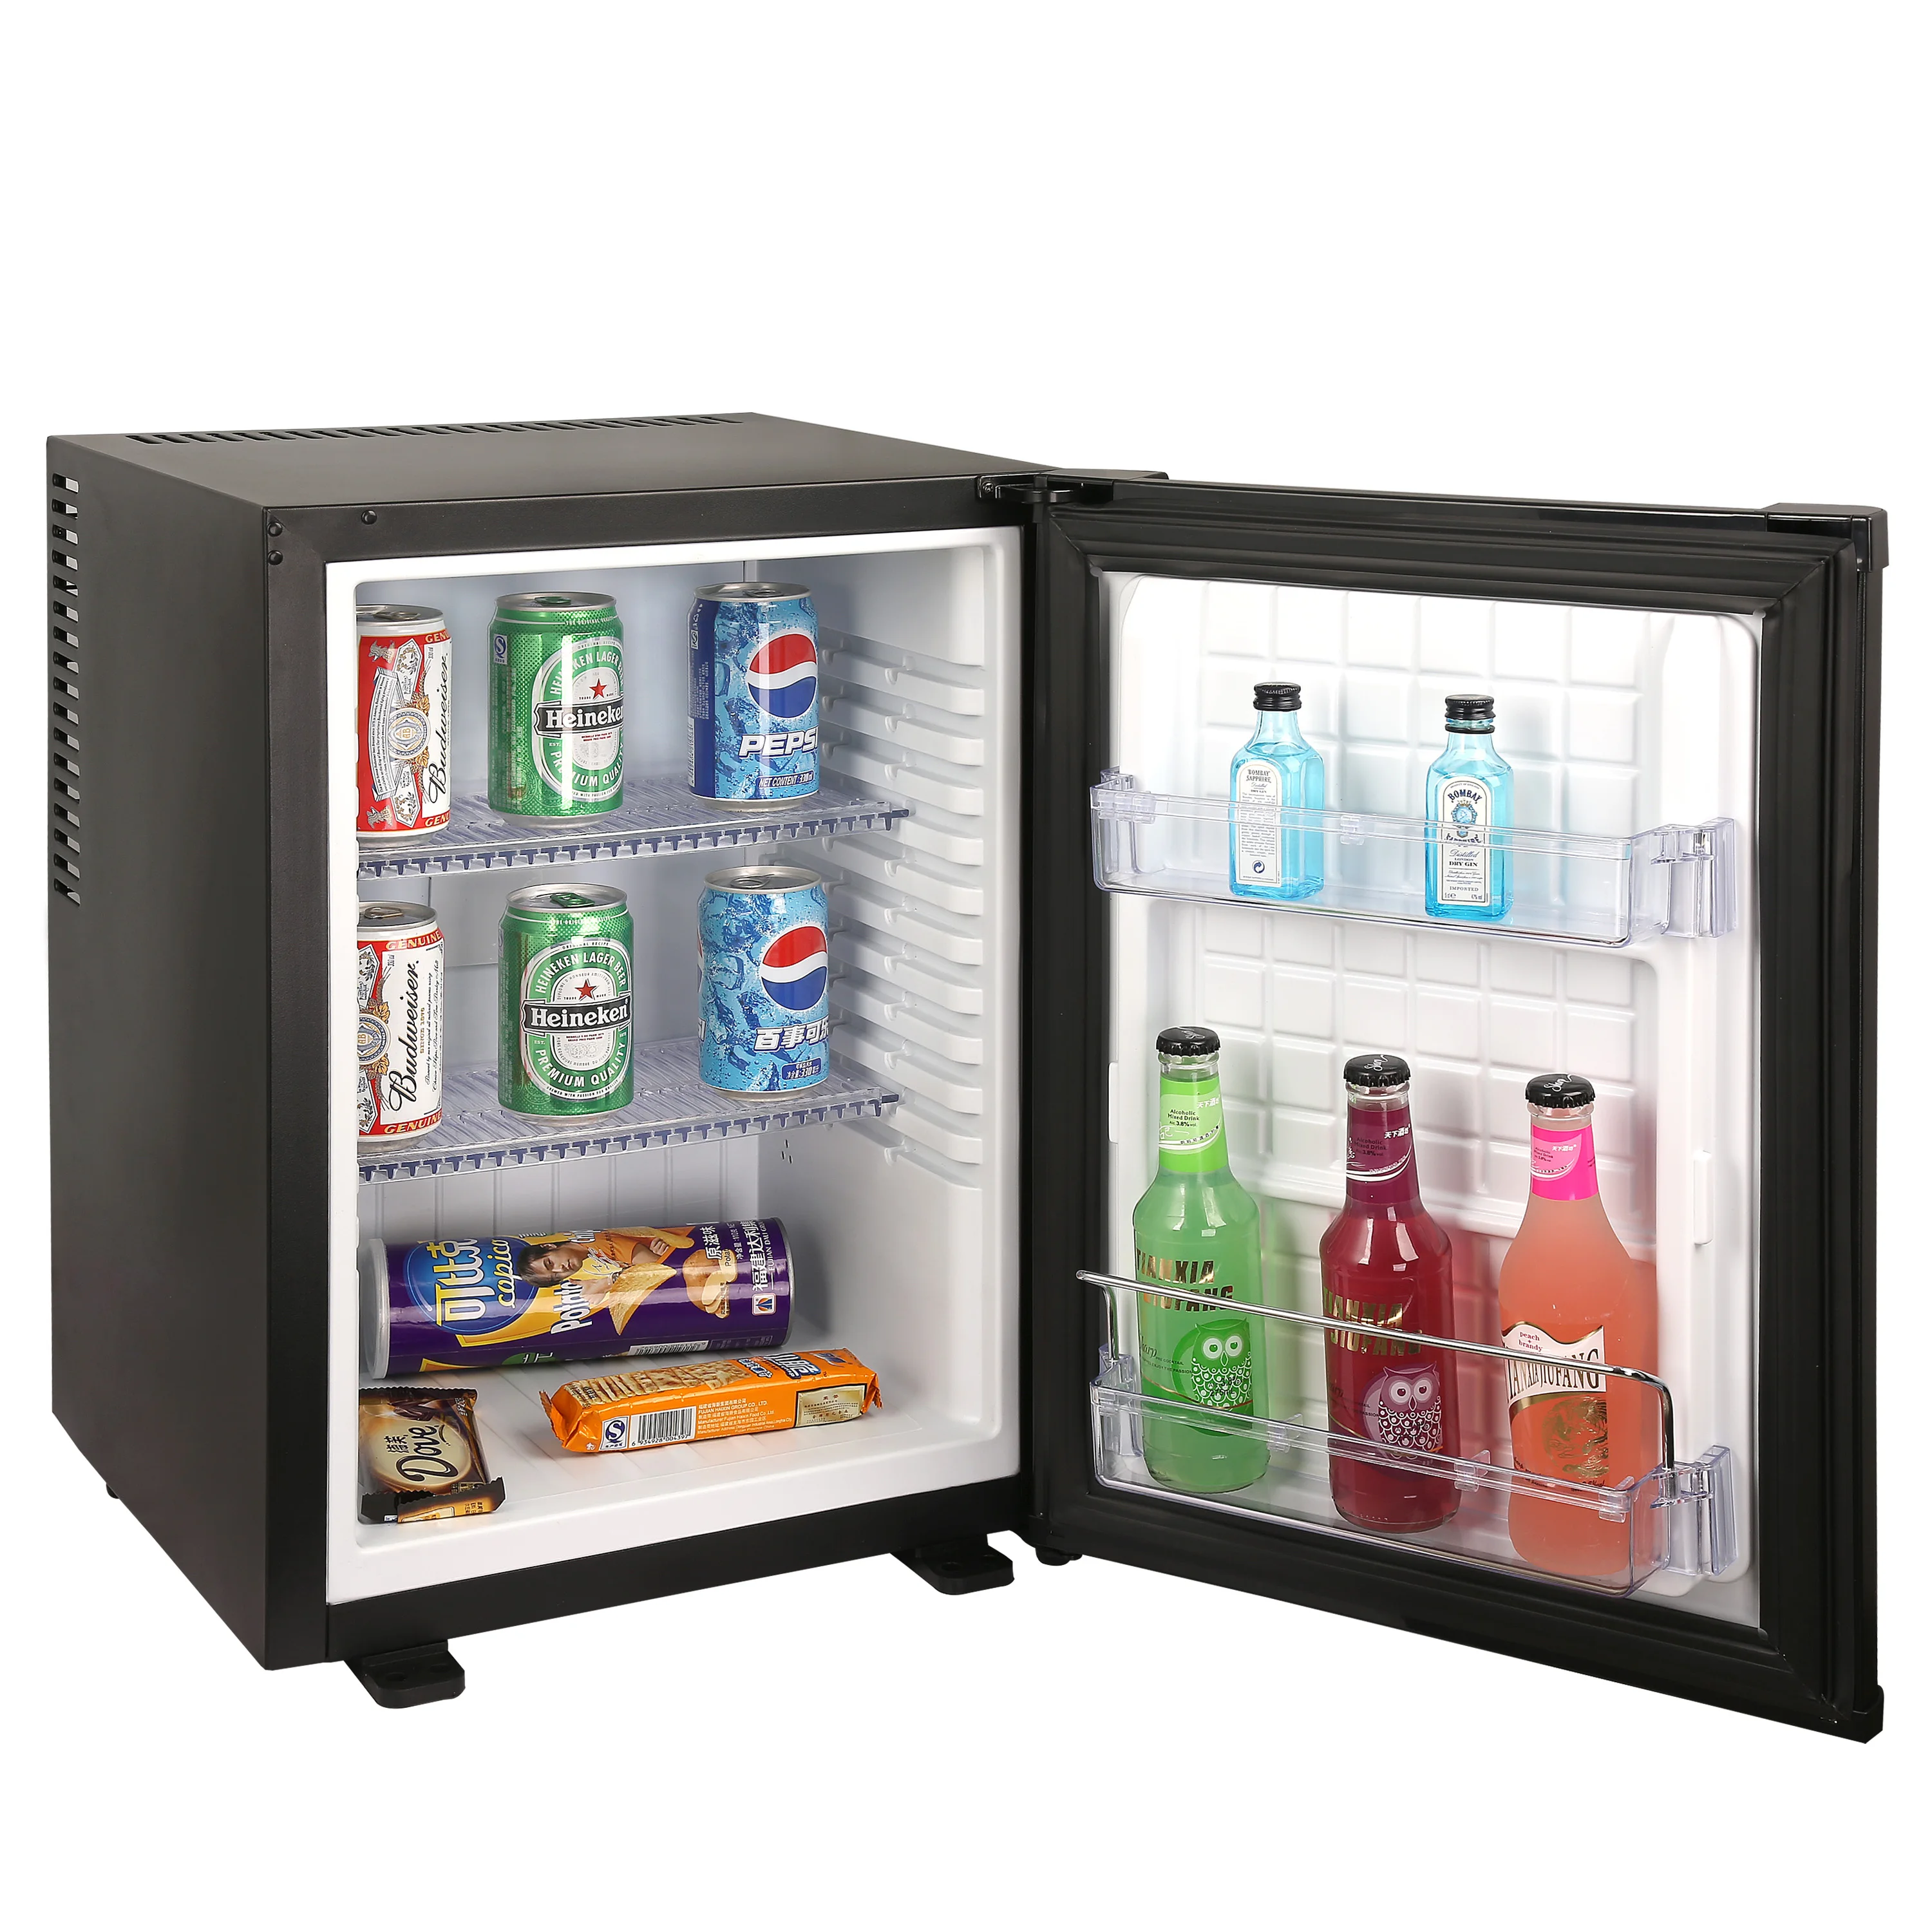 unibar nuovo promozione prezzo competitivo mini frigor bar mini